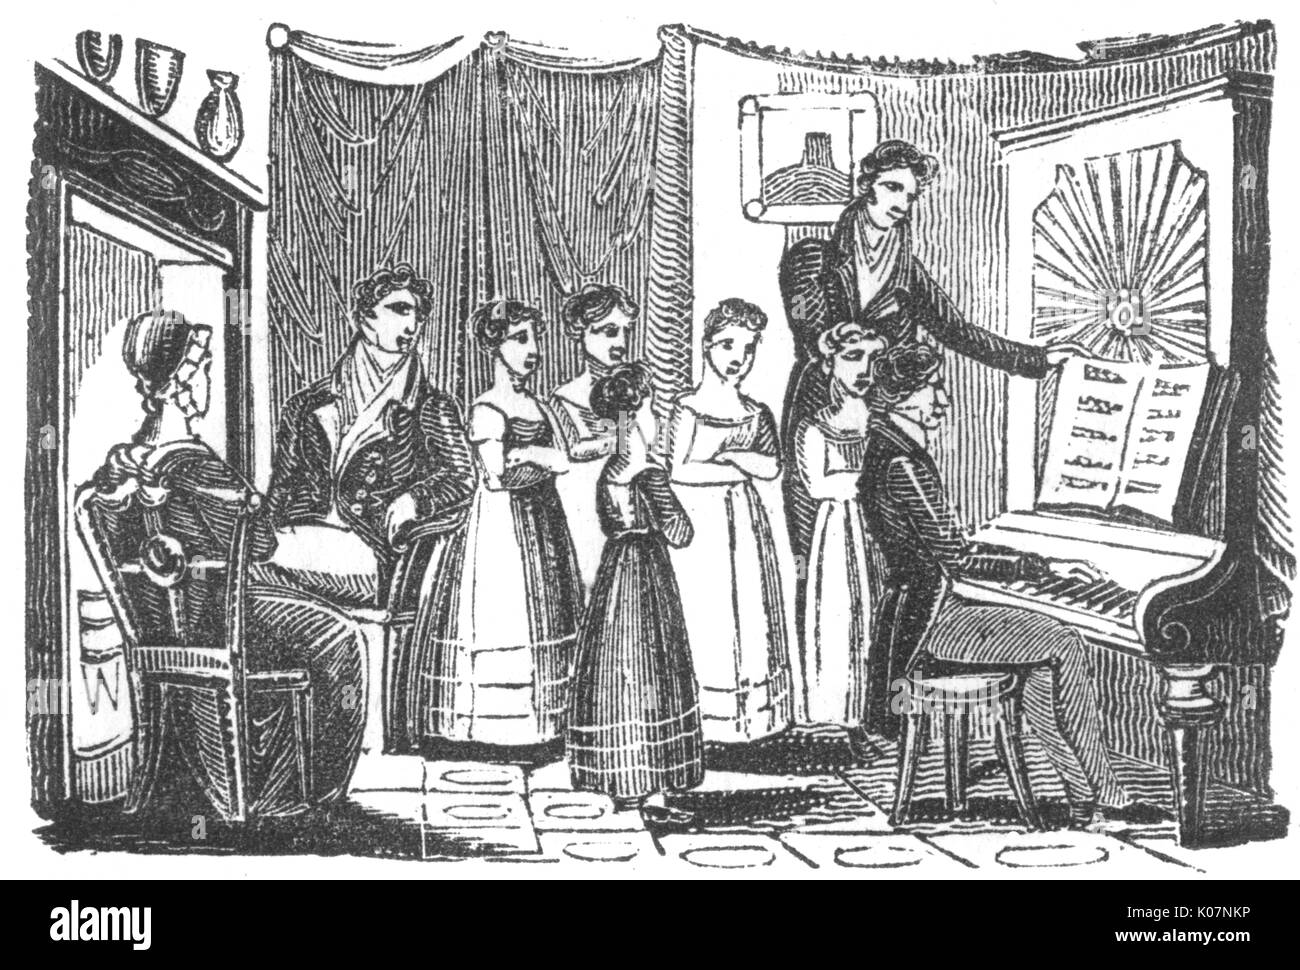 Gruppo recital per pianoforte, c. 1800 Foto Stock